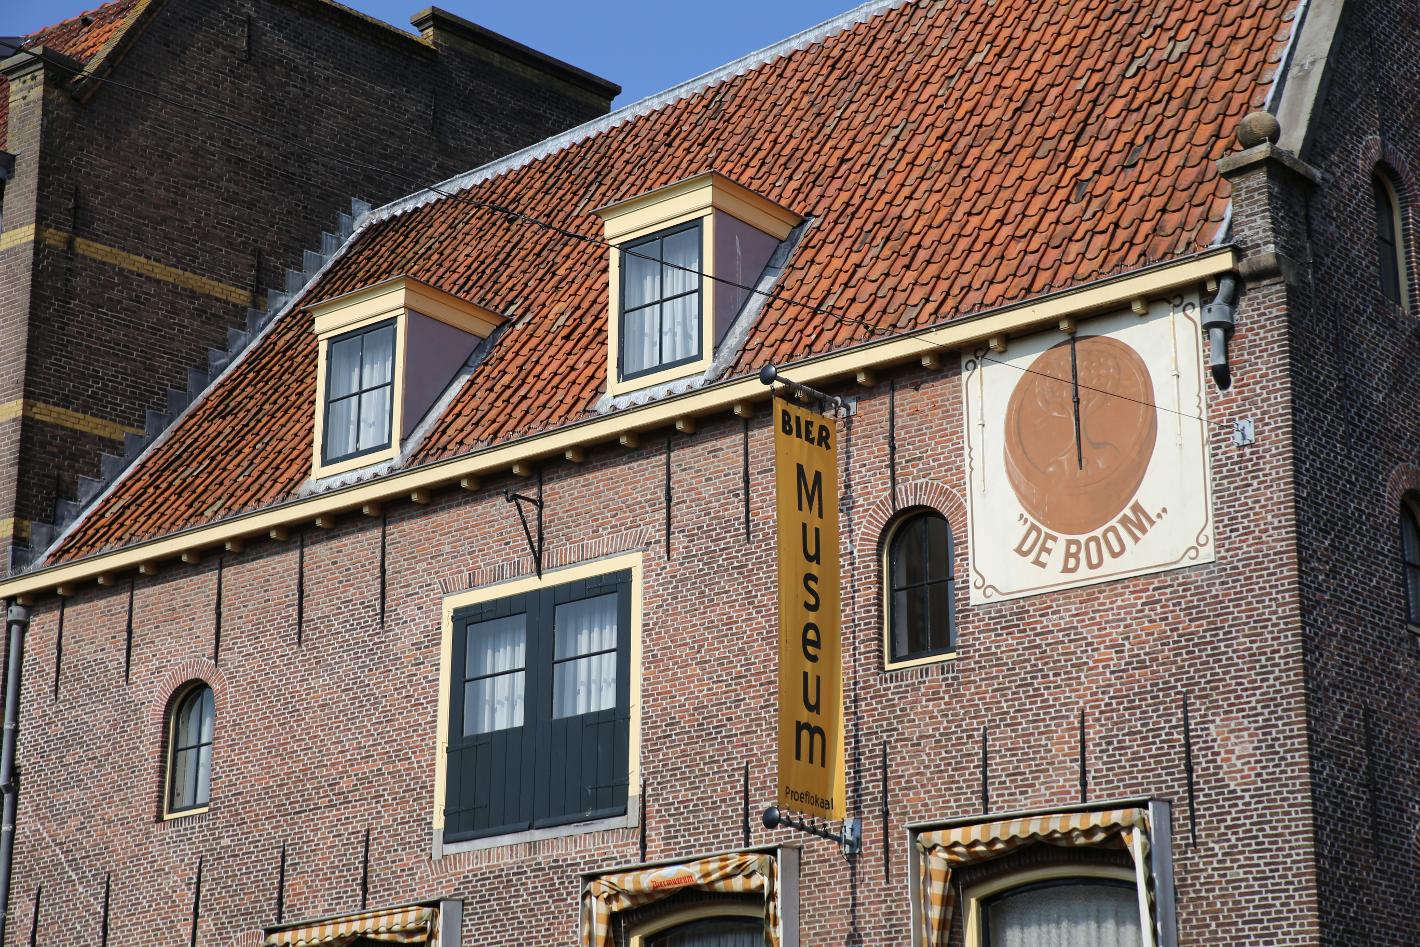 Foto Biermuseum De Boom in Alkmaar, Zien, Musea & galleries - #1